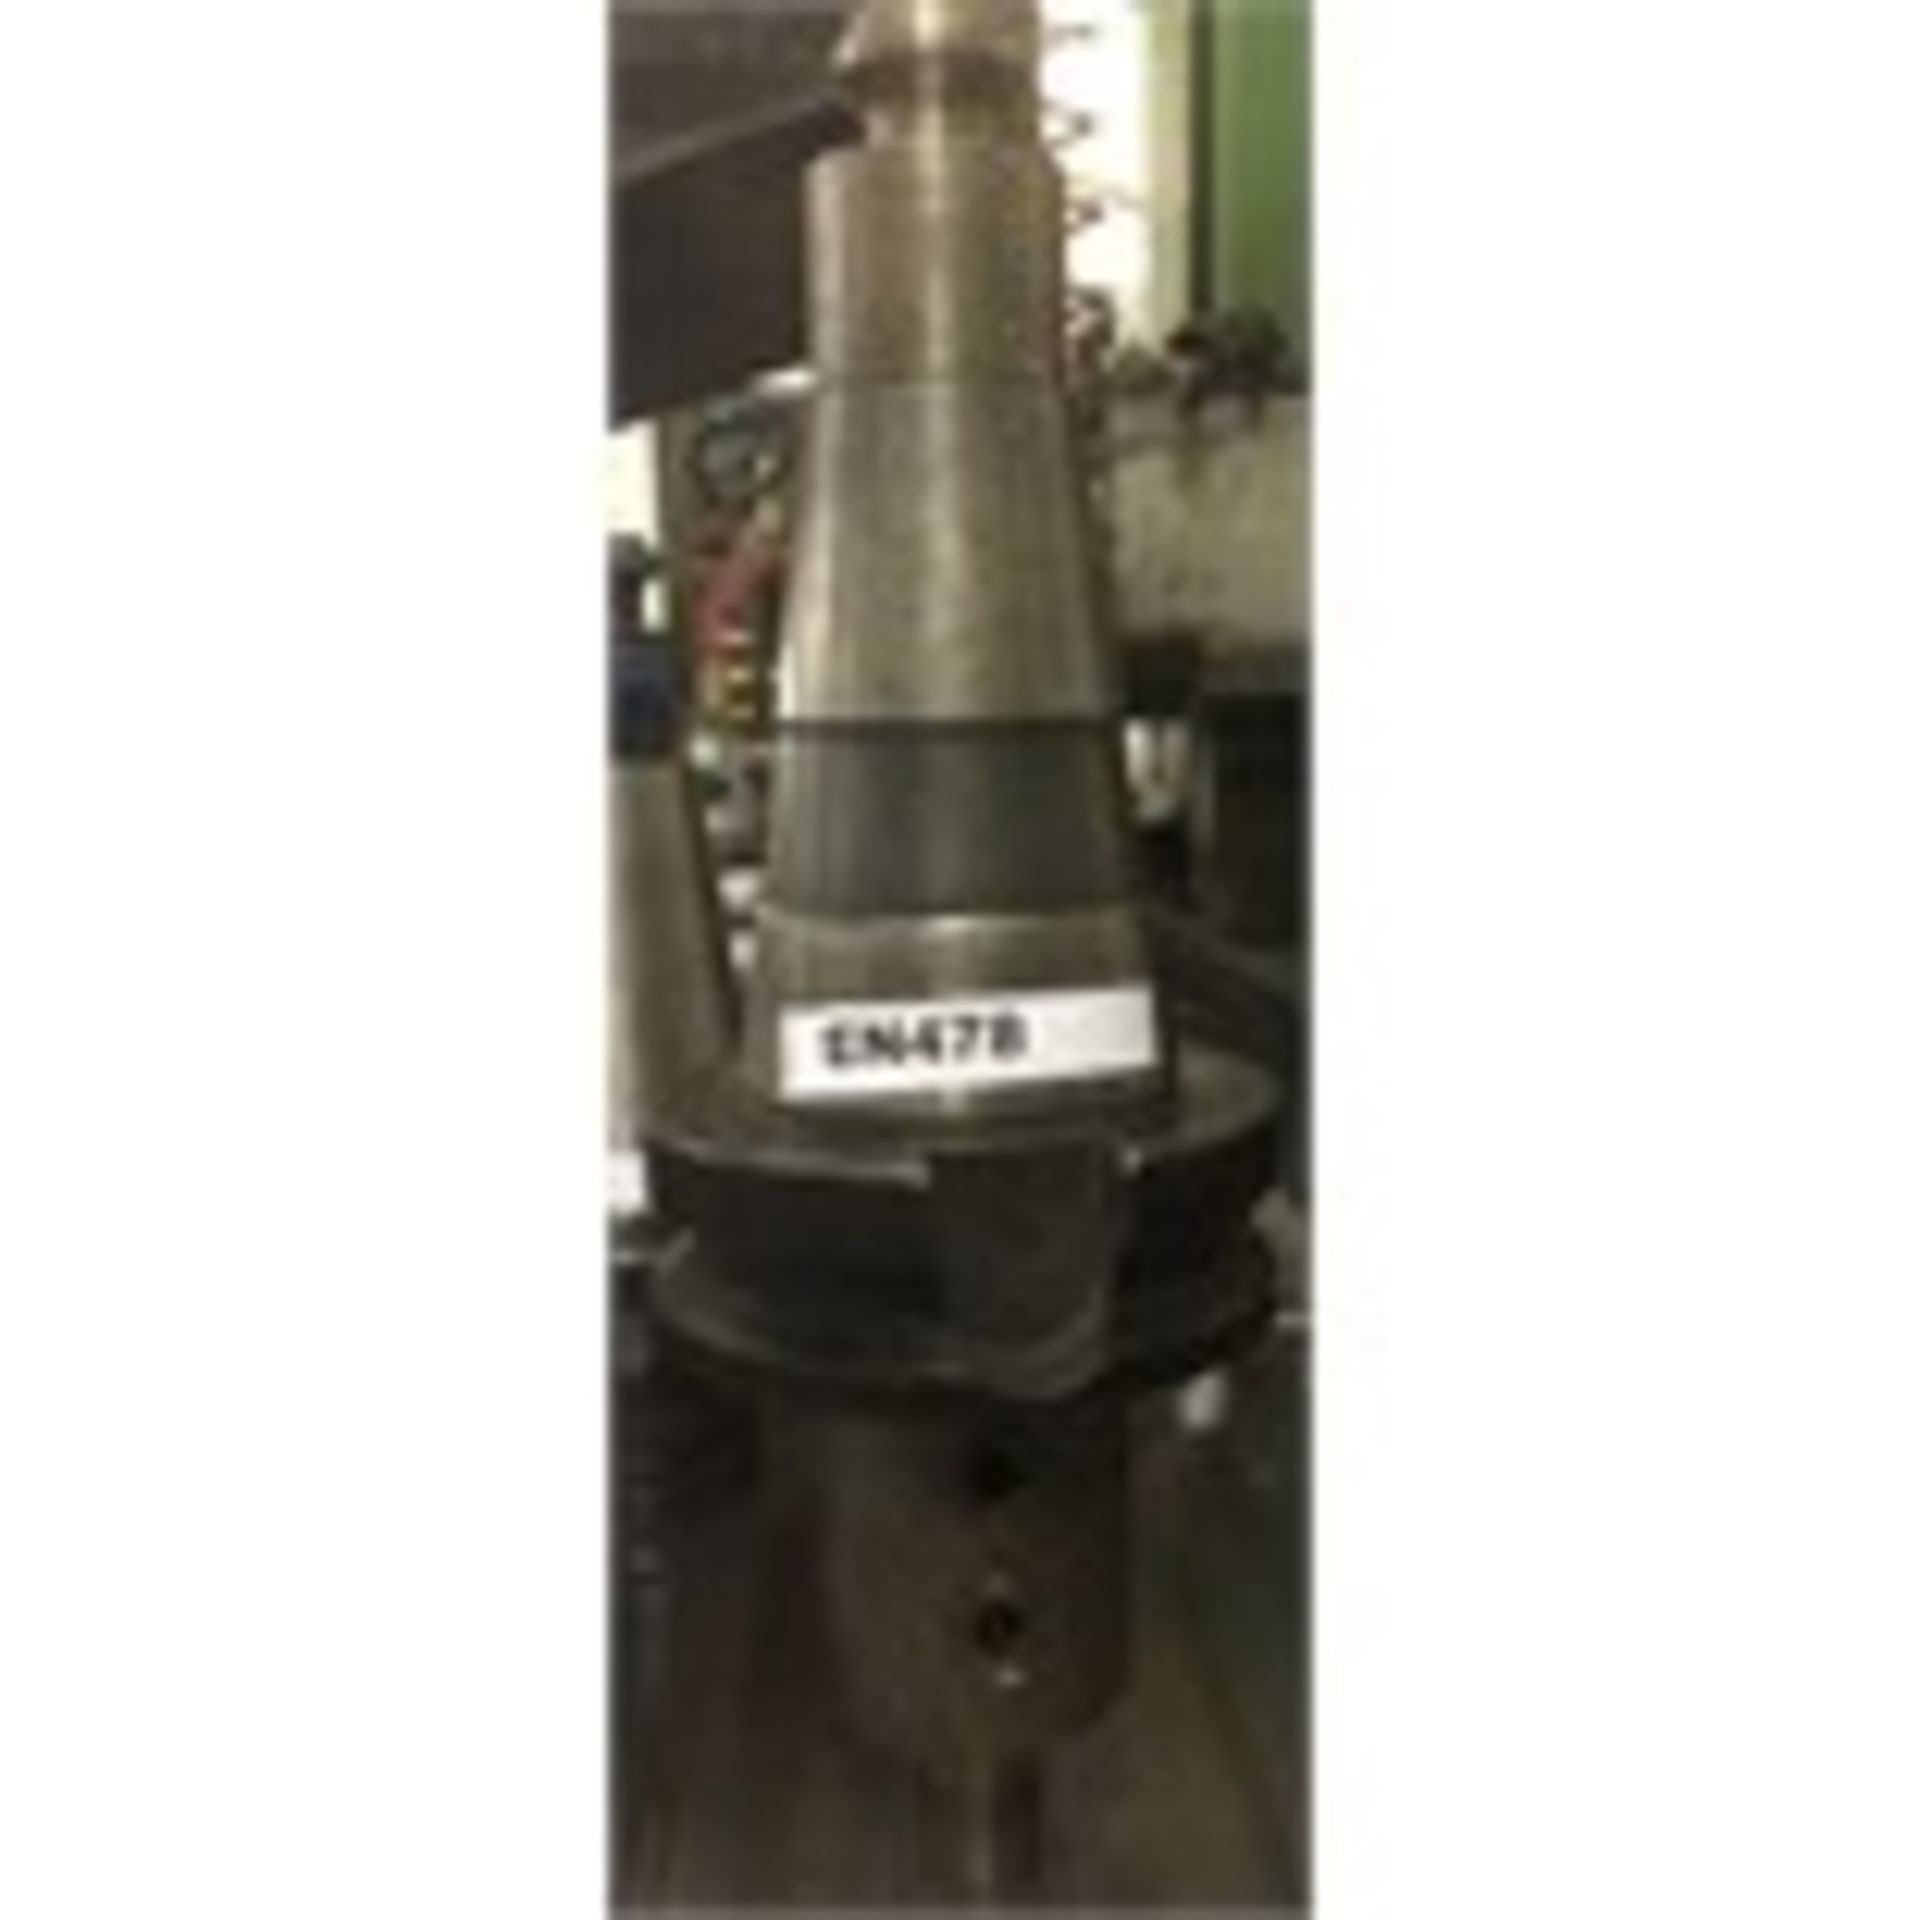 1 x CNC / VMC Mill Chuck with side lock holder - CL202 - Ref EN478 - Location: Altrincham WA14